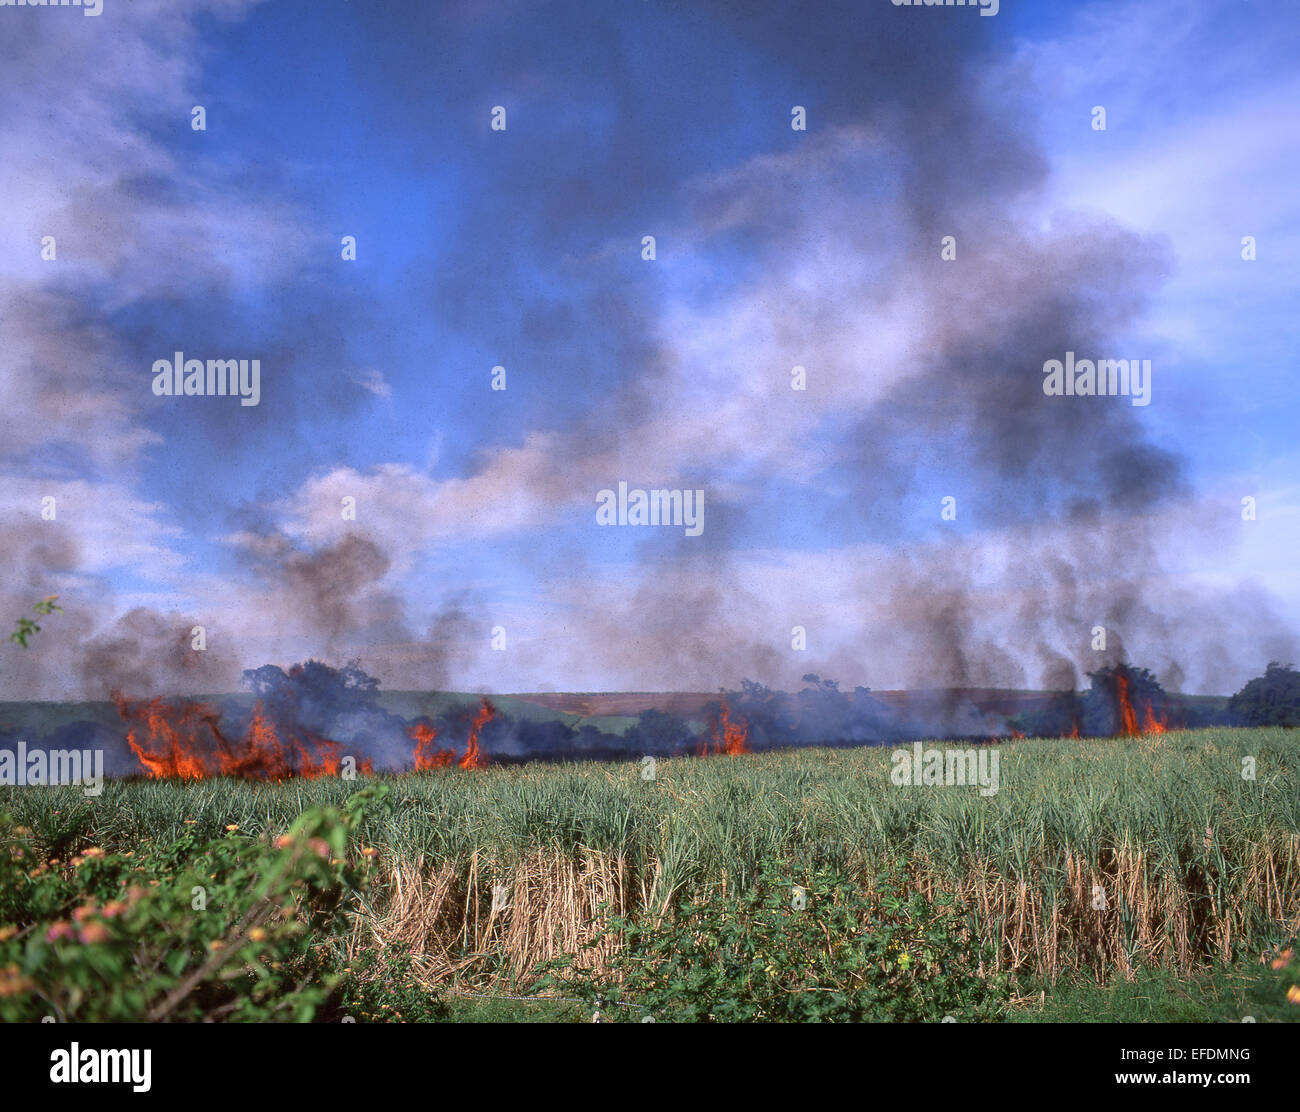 Combustione della canna da zucchero, distretto di Lubombo, Eswatini (Swaziland) Foto Stock